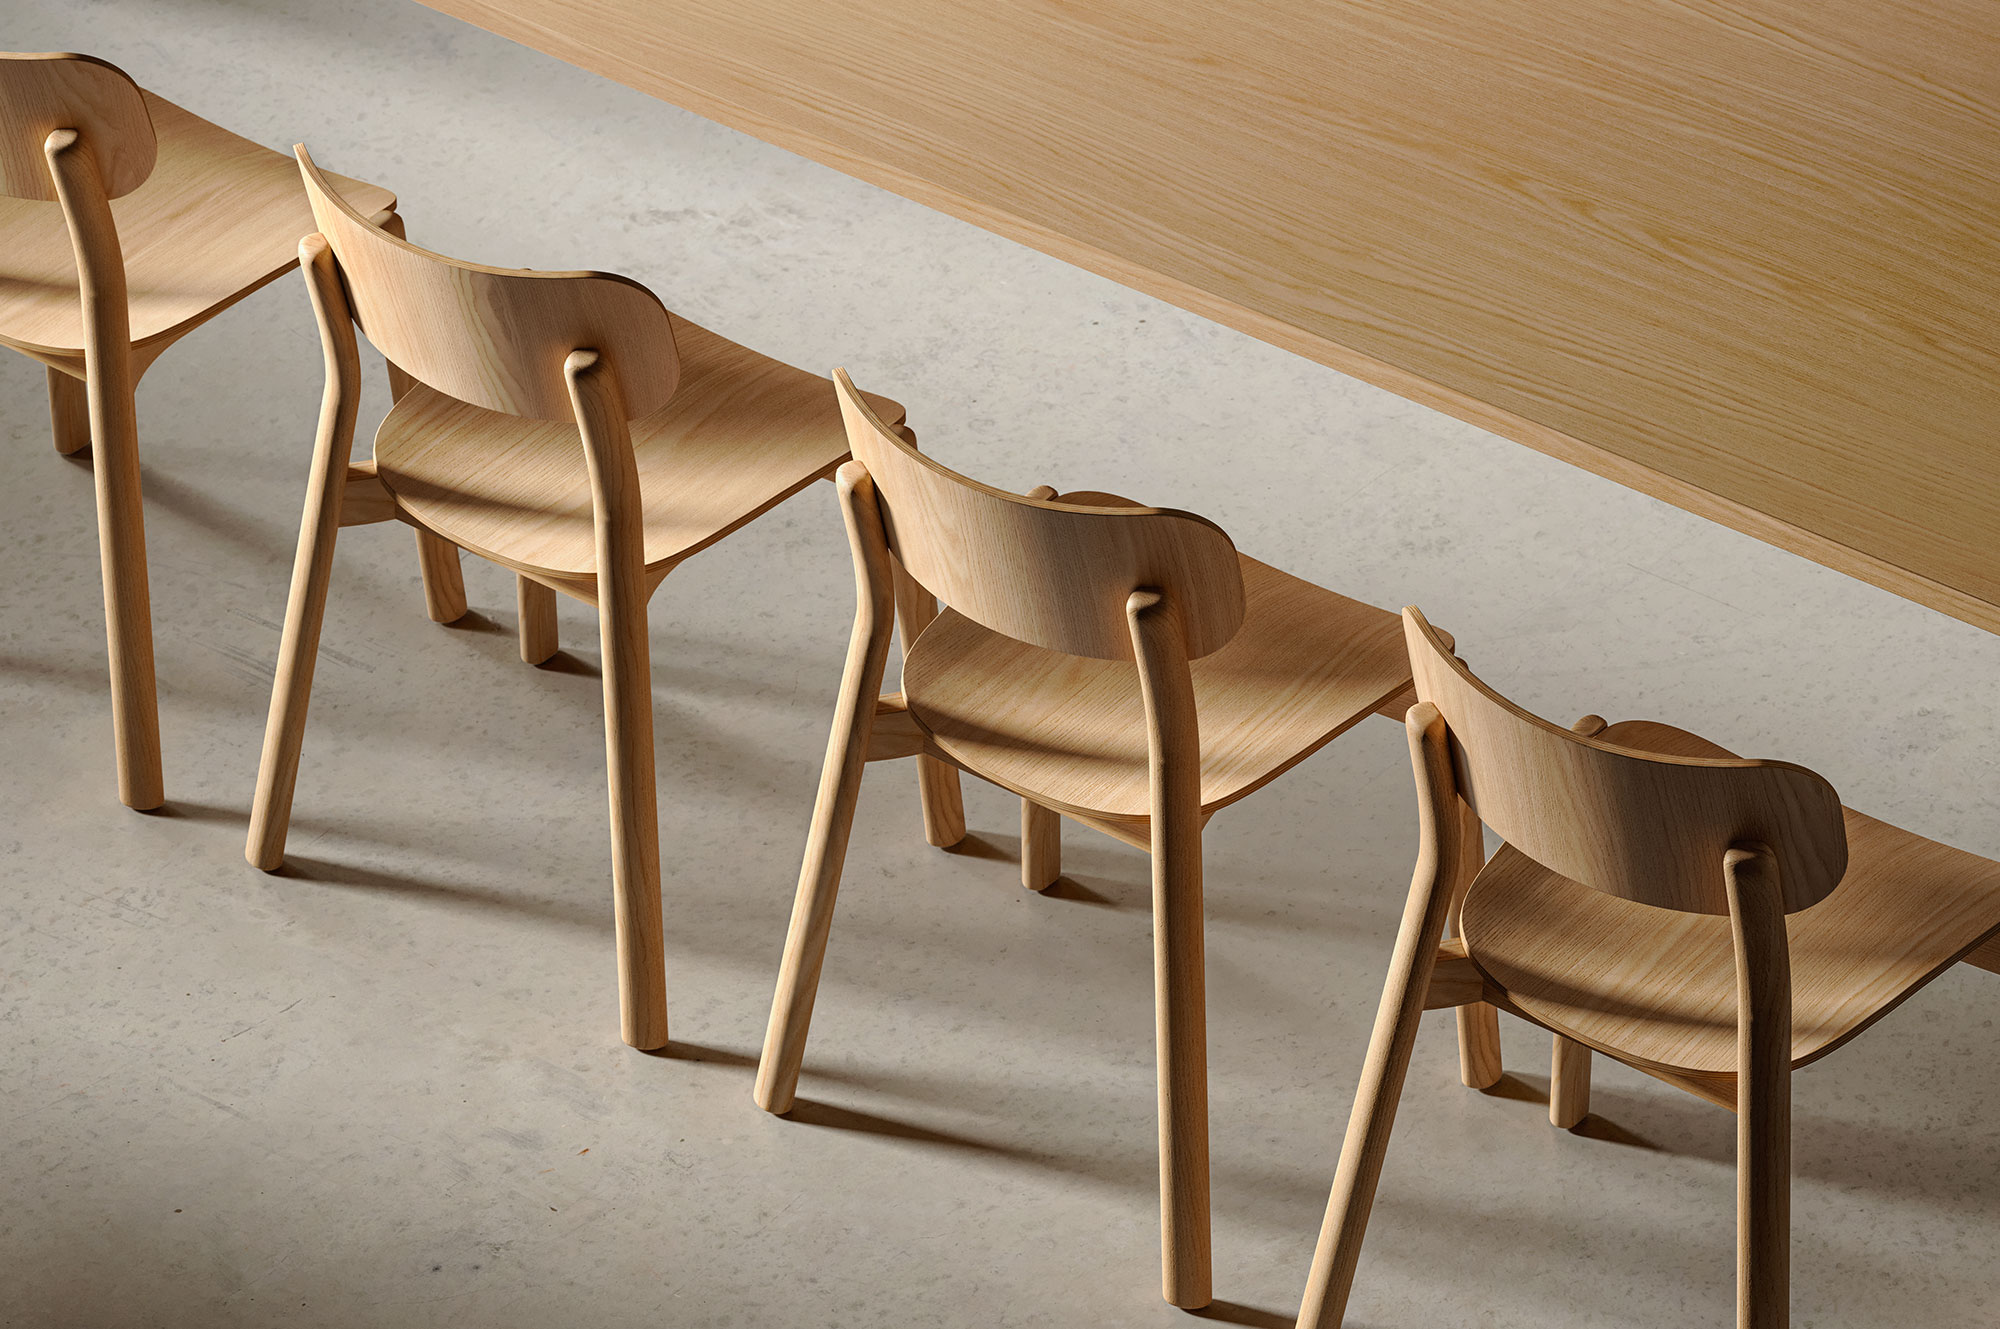 Kiyumi Wood è progettata per essere solida, pur conservando un aspetto lineare e leggero